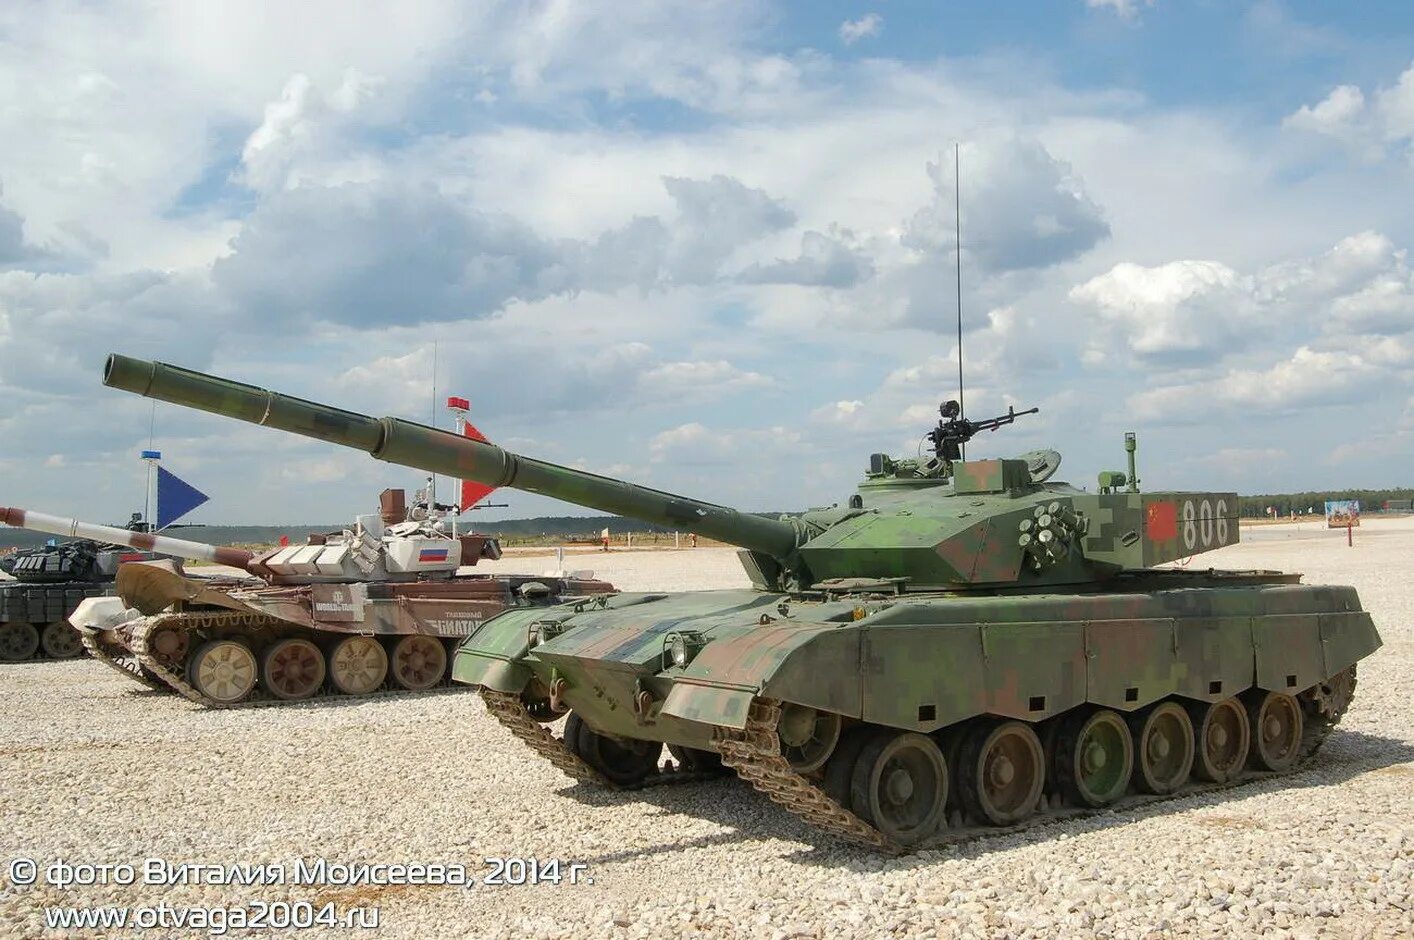 Tank 300 great Wall. Китайский танк 300. Китайский внедорожник танк 300. Китайский танк 500.